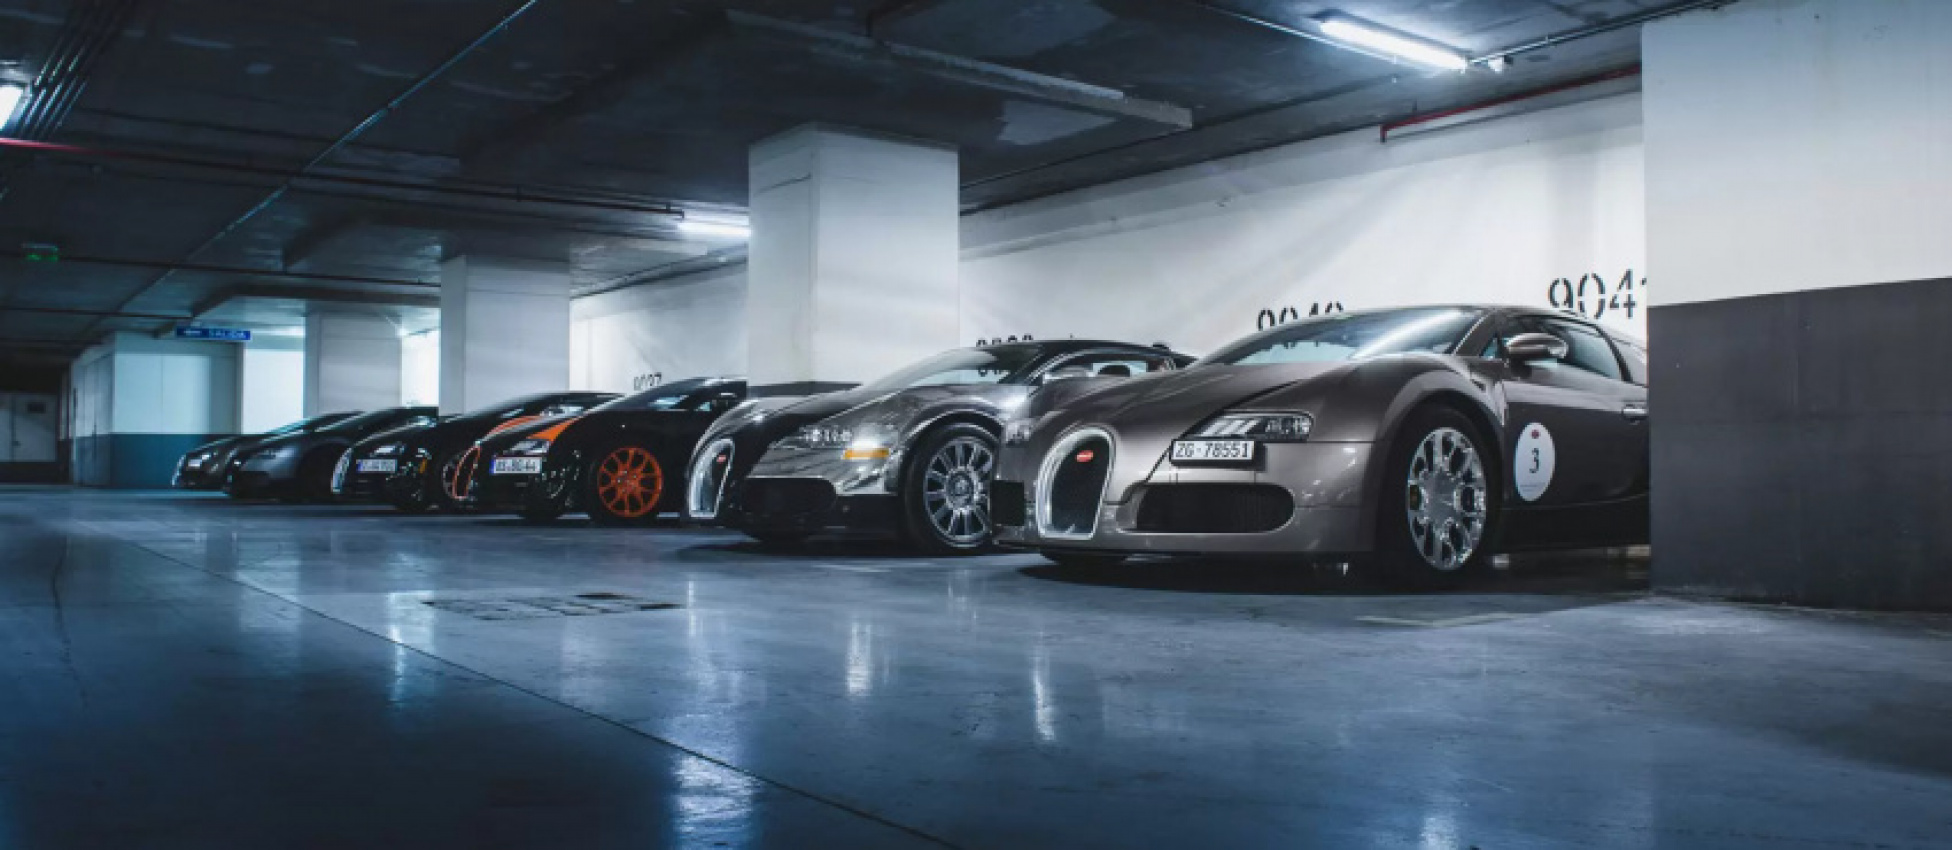 autos, bugatti, cars, bugatti veyron, celebrities, veyron, keith urban owned a $2.7 million bugatti veyron